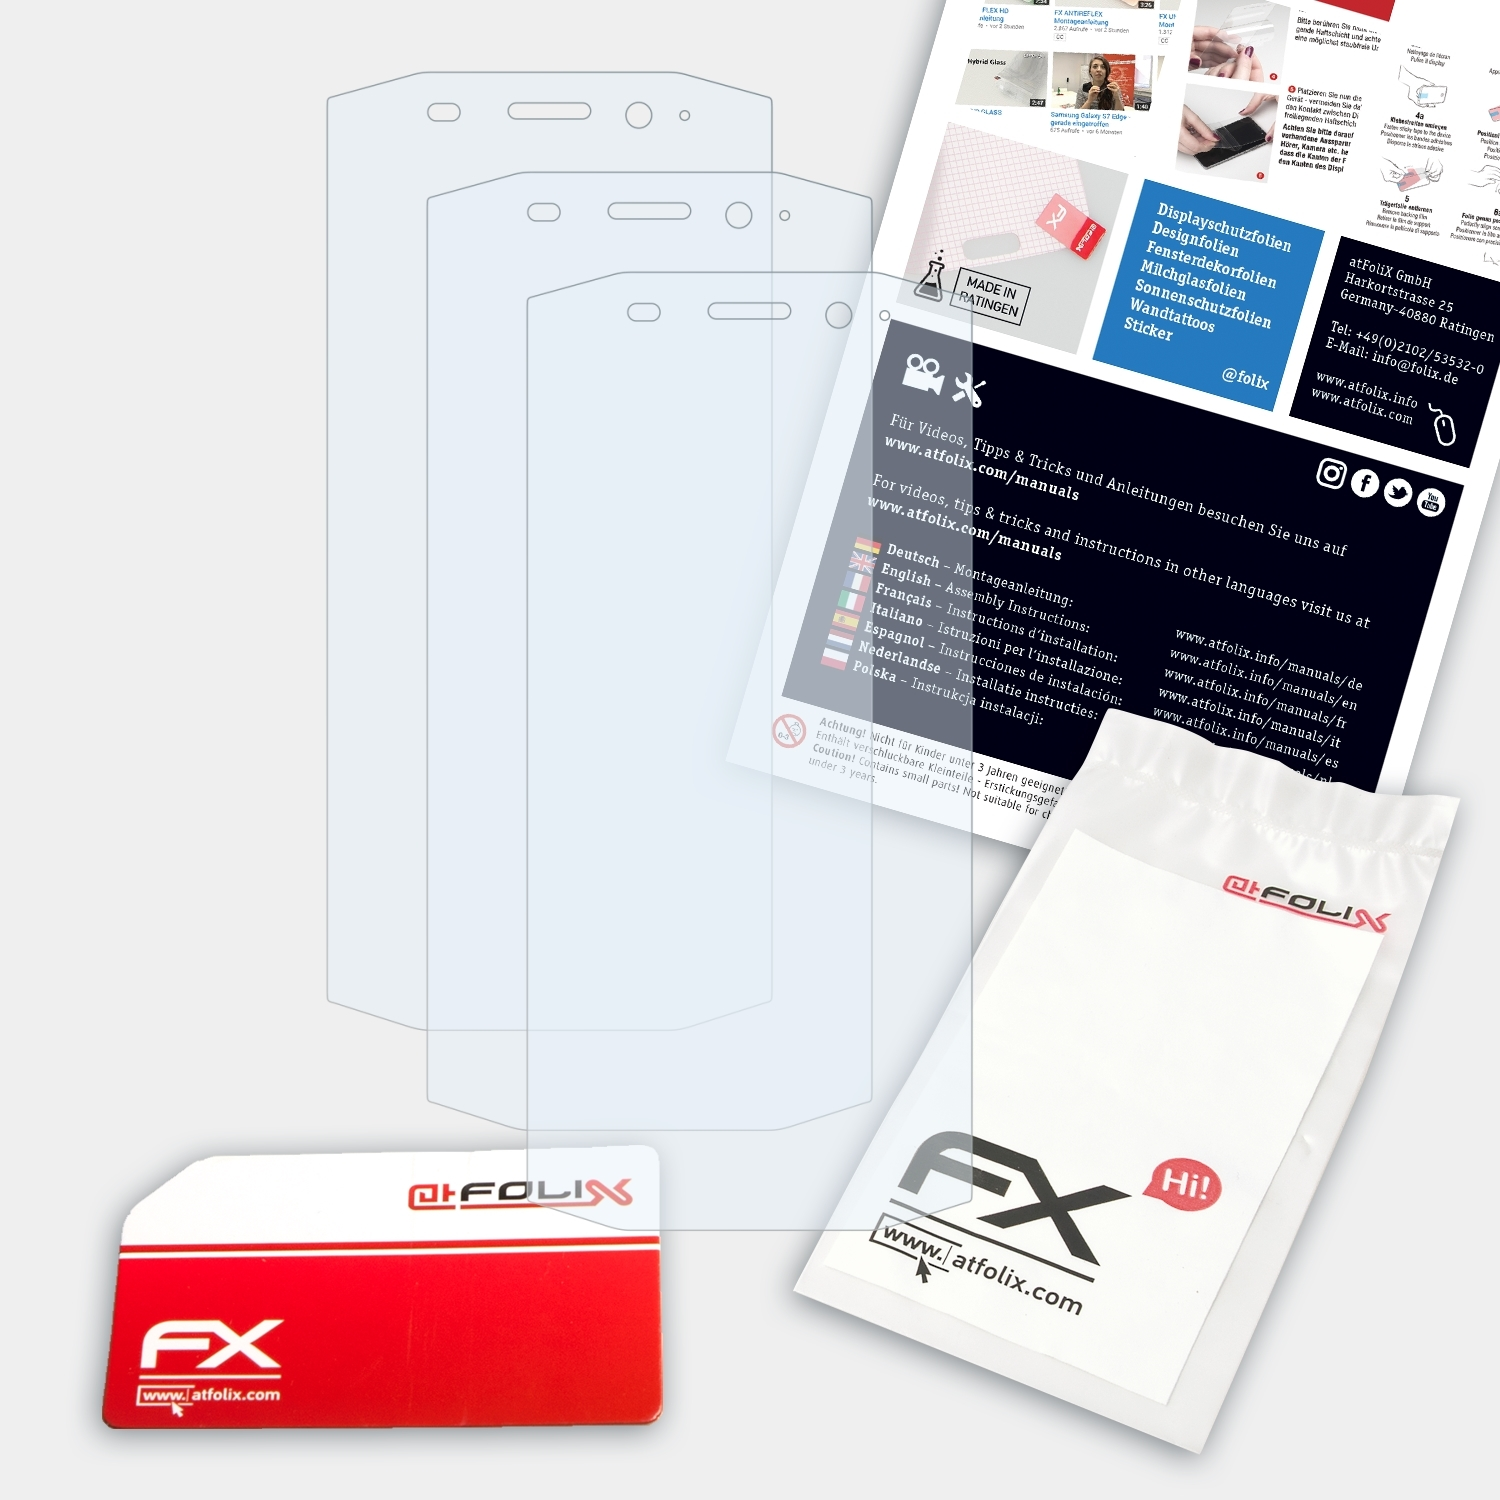 ATFOLIX 3x FX-Clear Displayschutz(für BV5800 Blackview Pro)